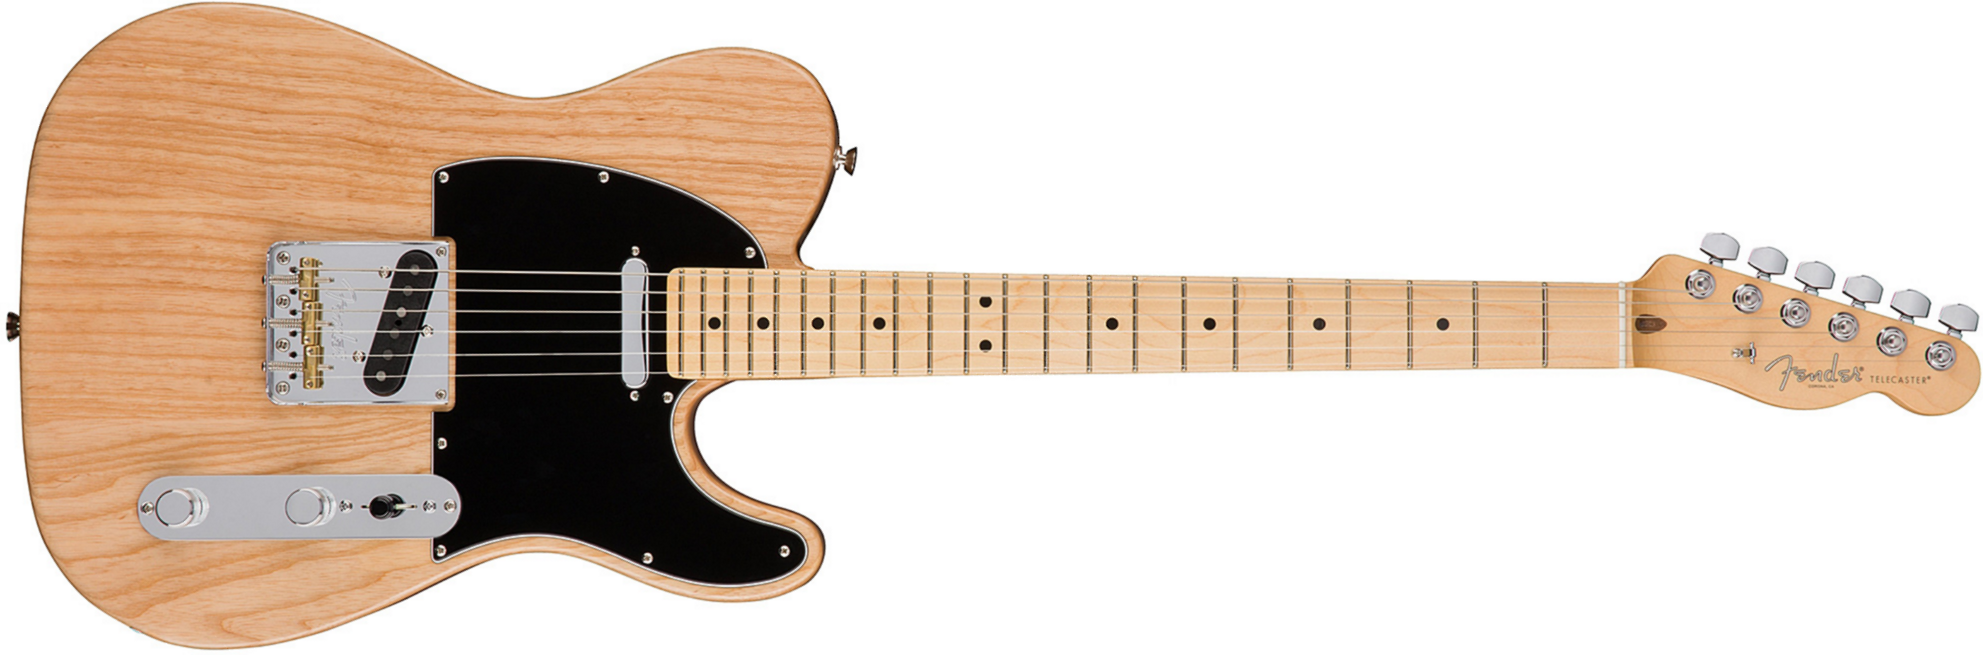 Fender Tele American Professional 2s Usa Mn - Natural - E-Gitarre in Teleform - Main picture